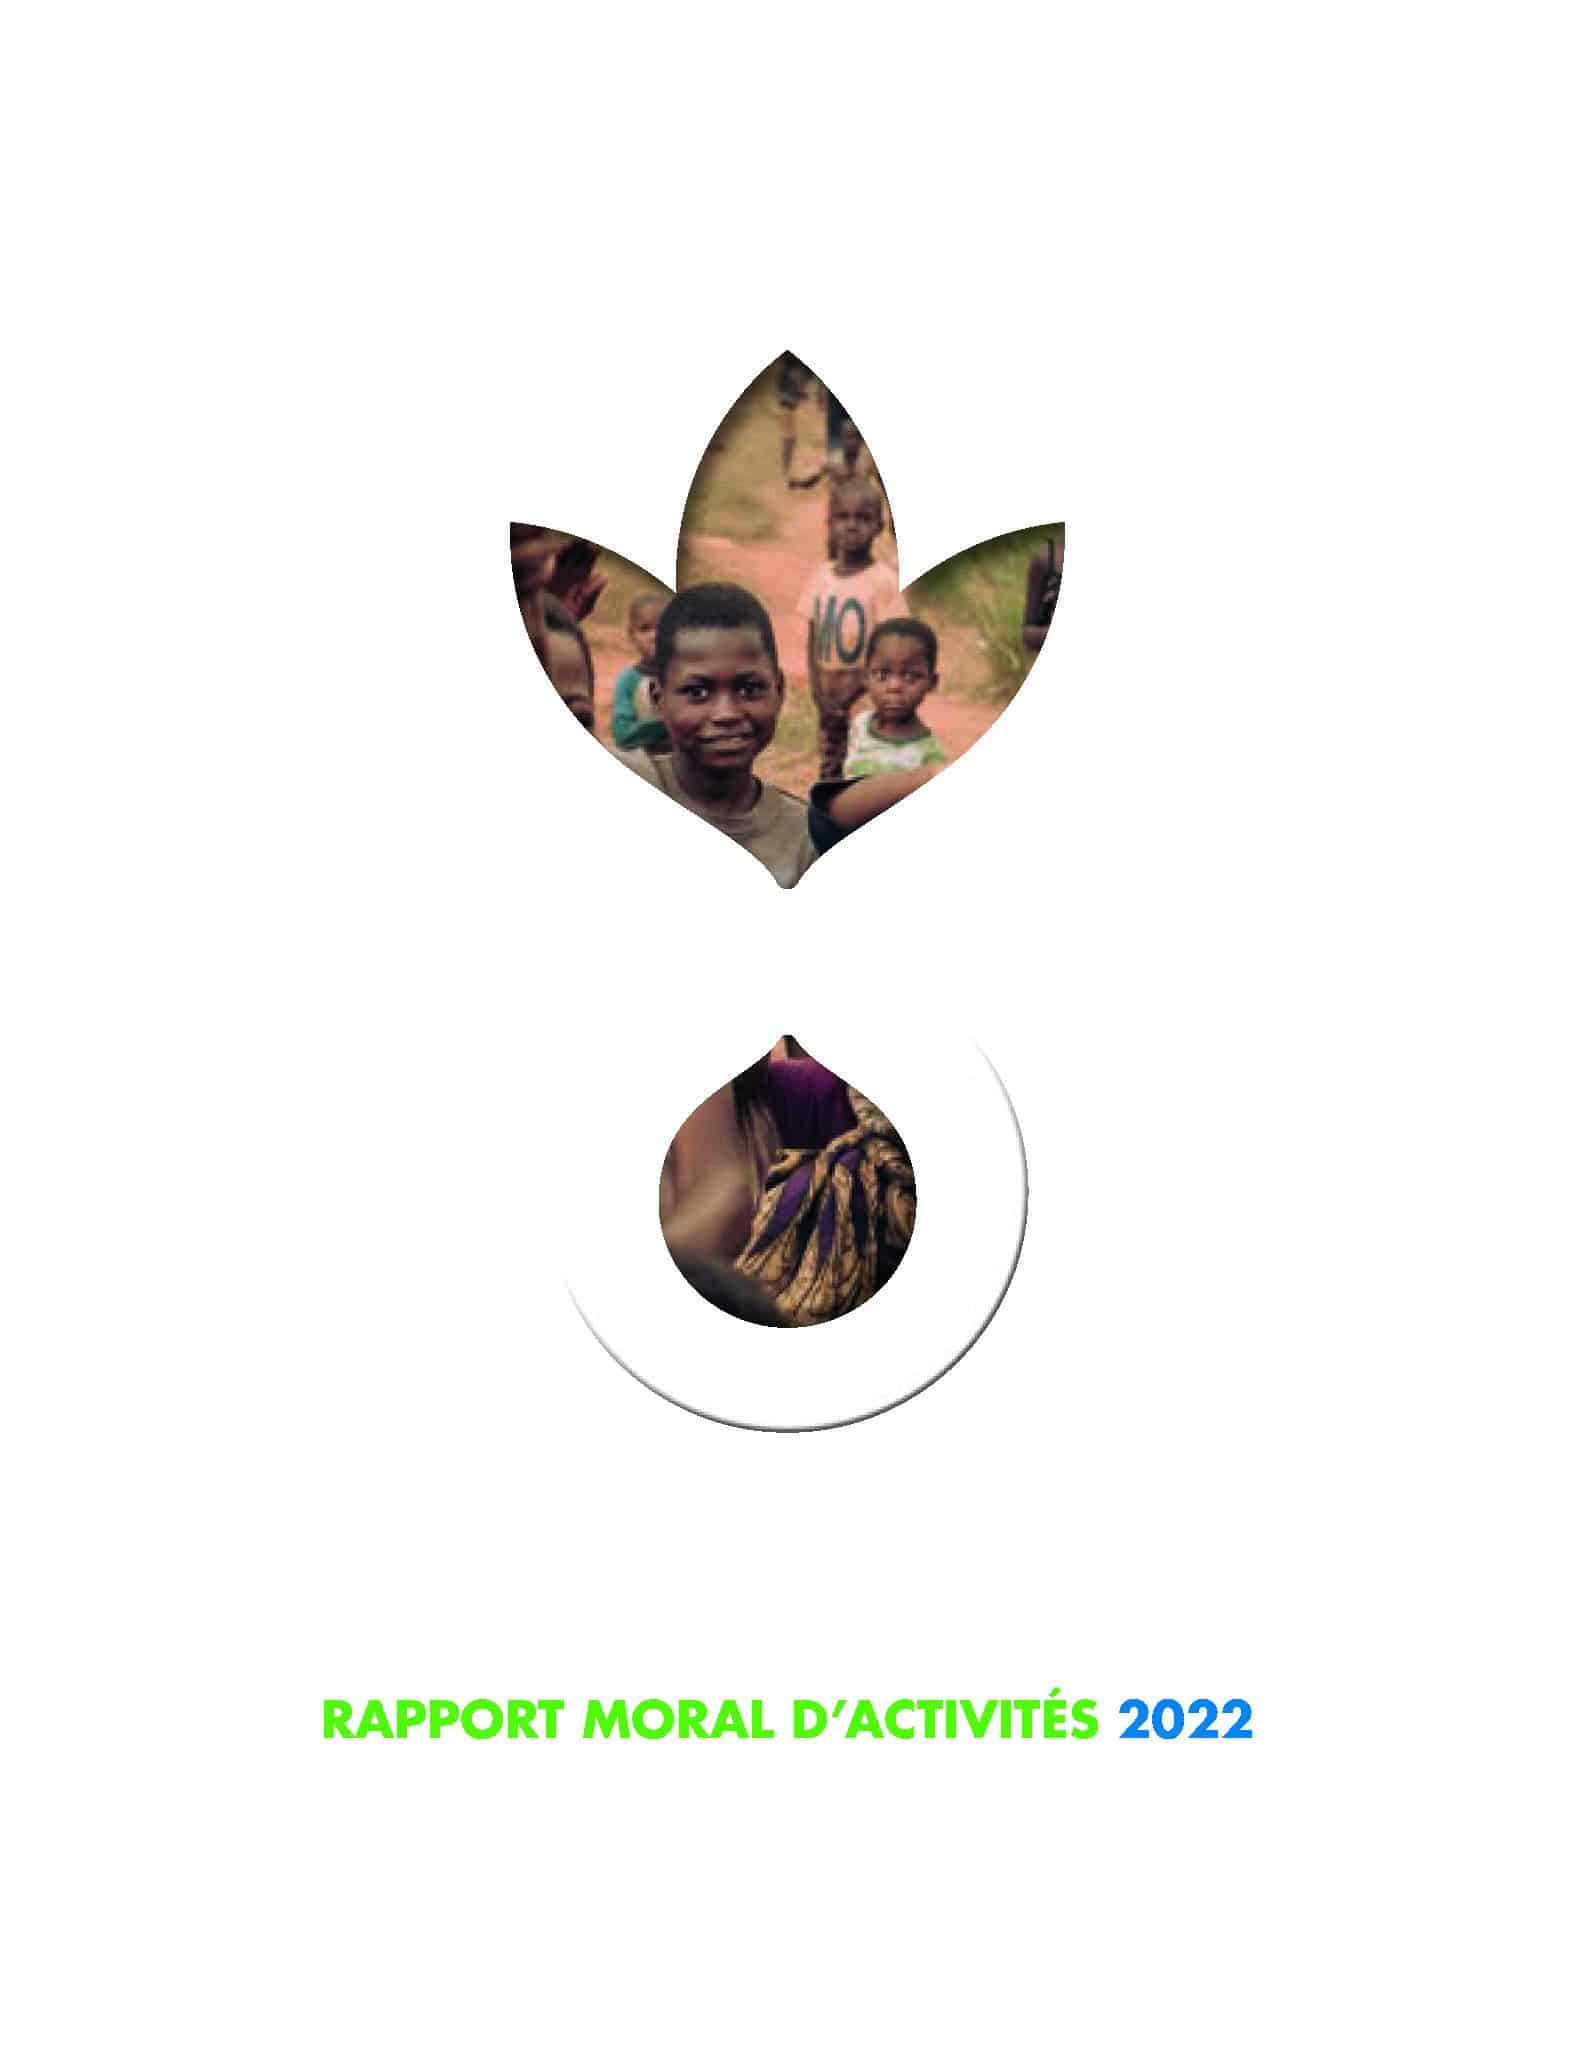 Rapport moral d’activités 2022 d’Action contre la Faim